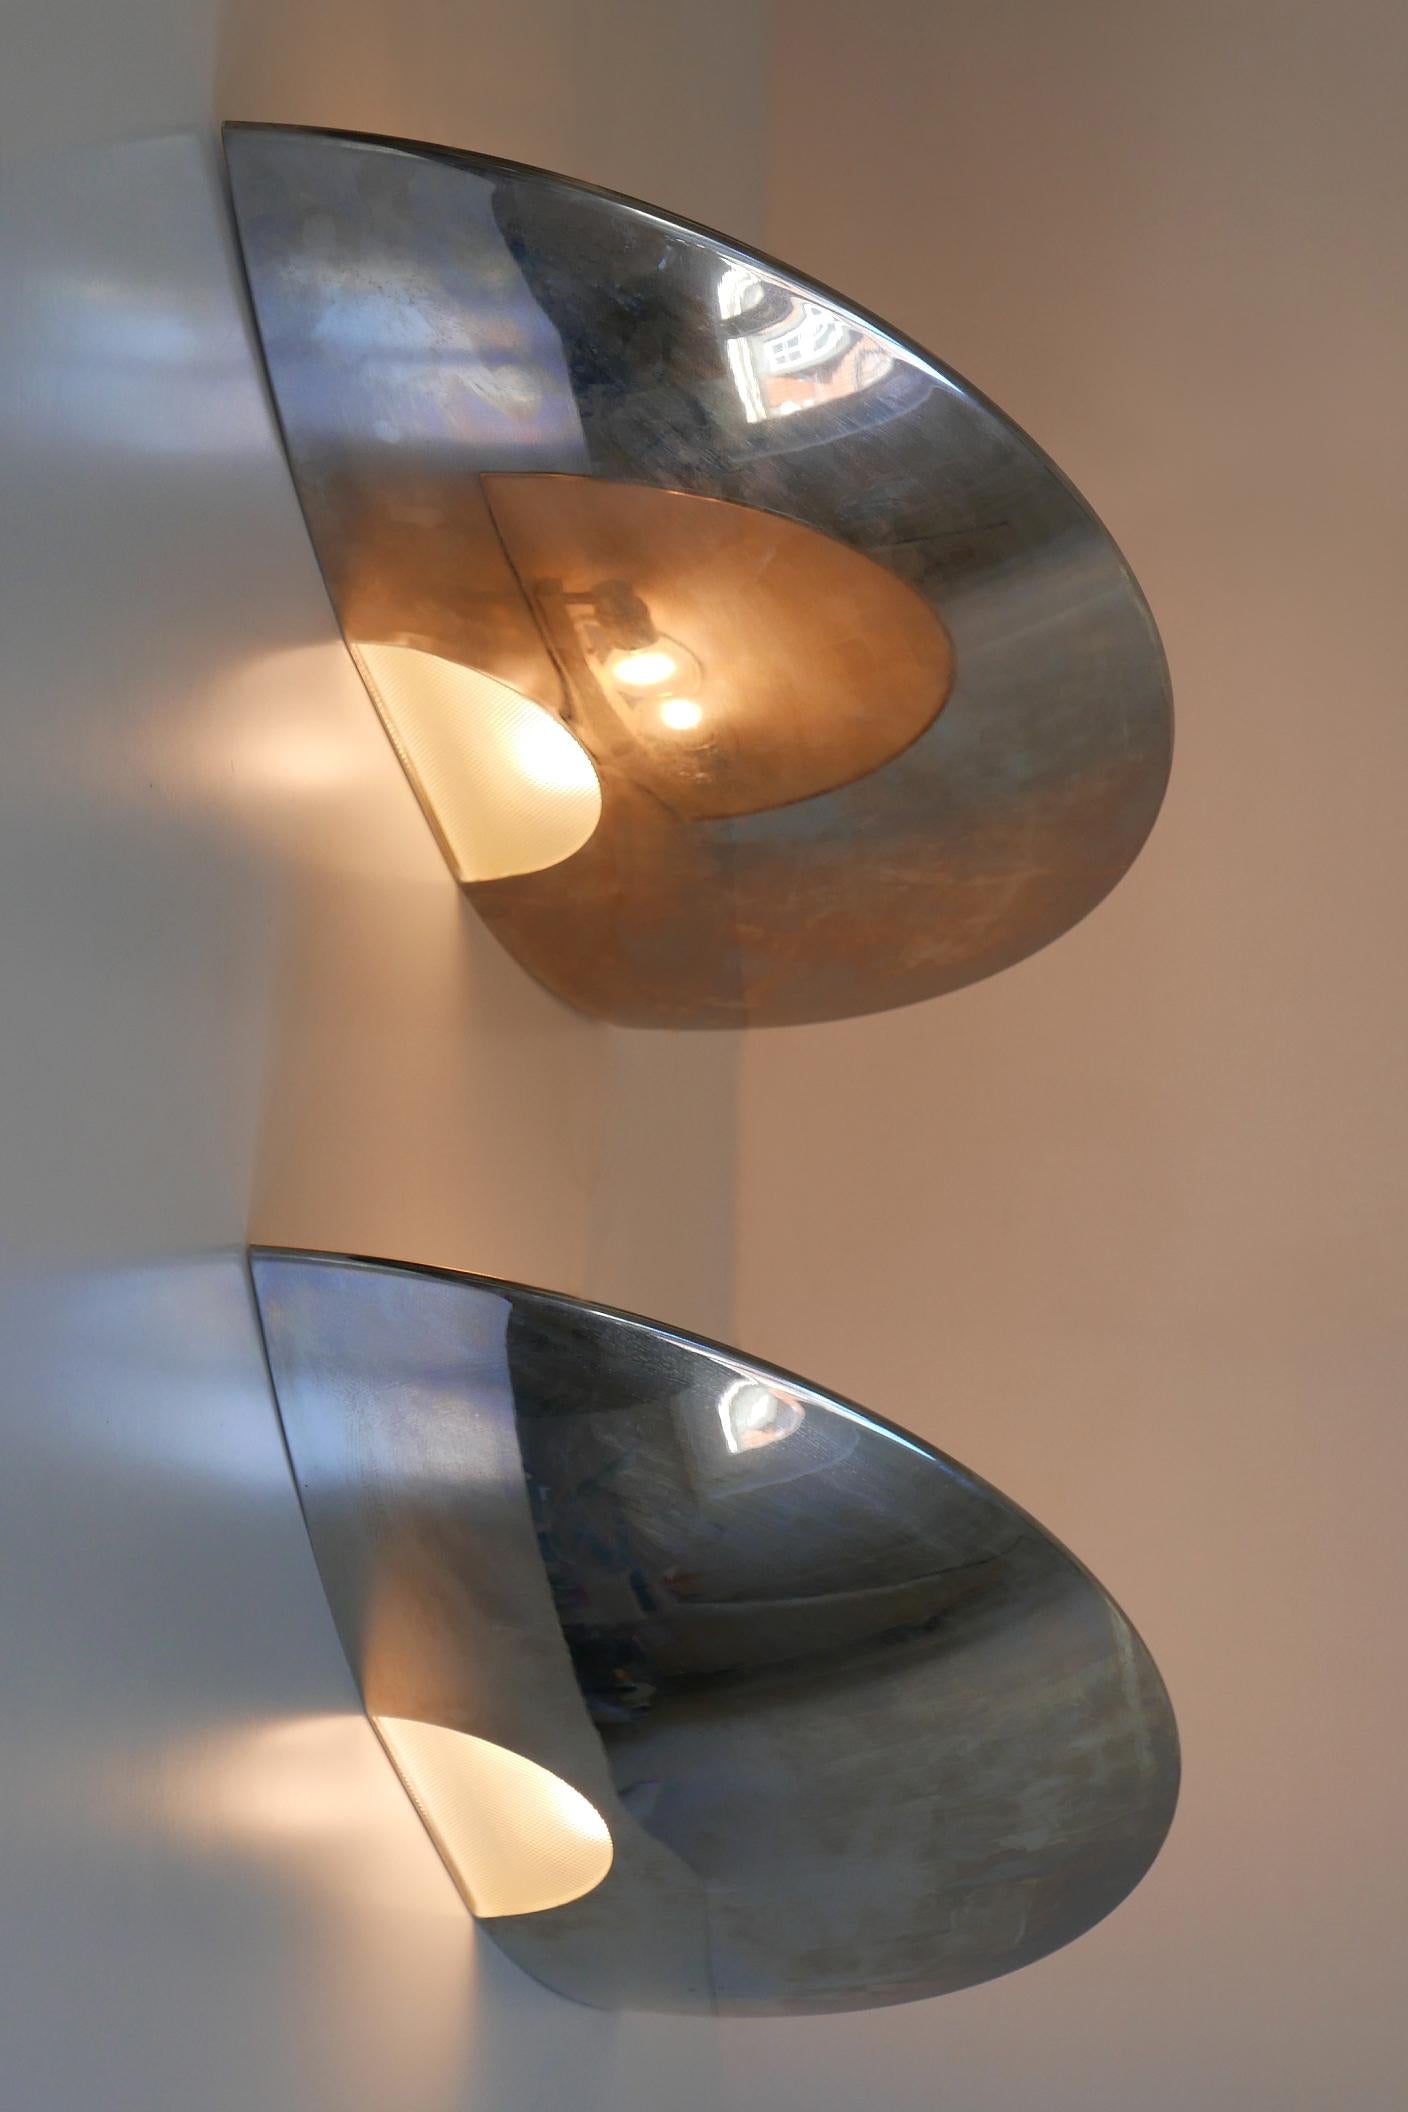 Ensemble de deux lampes murales ou appliques XXL et élégantes de style moderne du milieu du siècle. Conçu et fabriqué par Florian Schulz, années 1970, Allemagne.

Réalisée en laiton nickelé et en verre, chaque lampe est livrée avec 2 douilles à vis